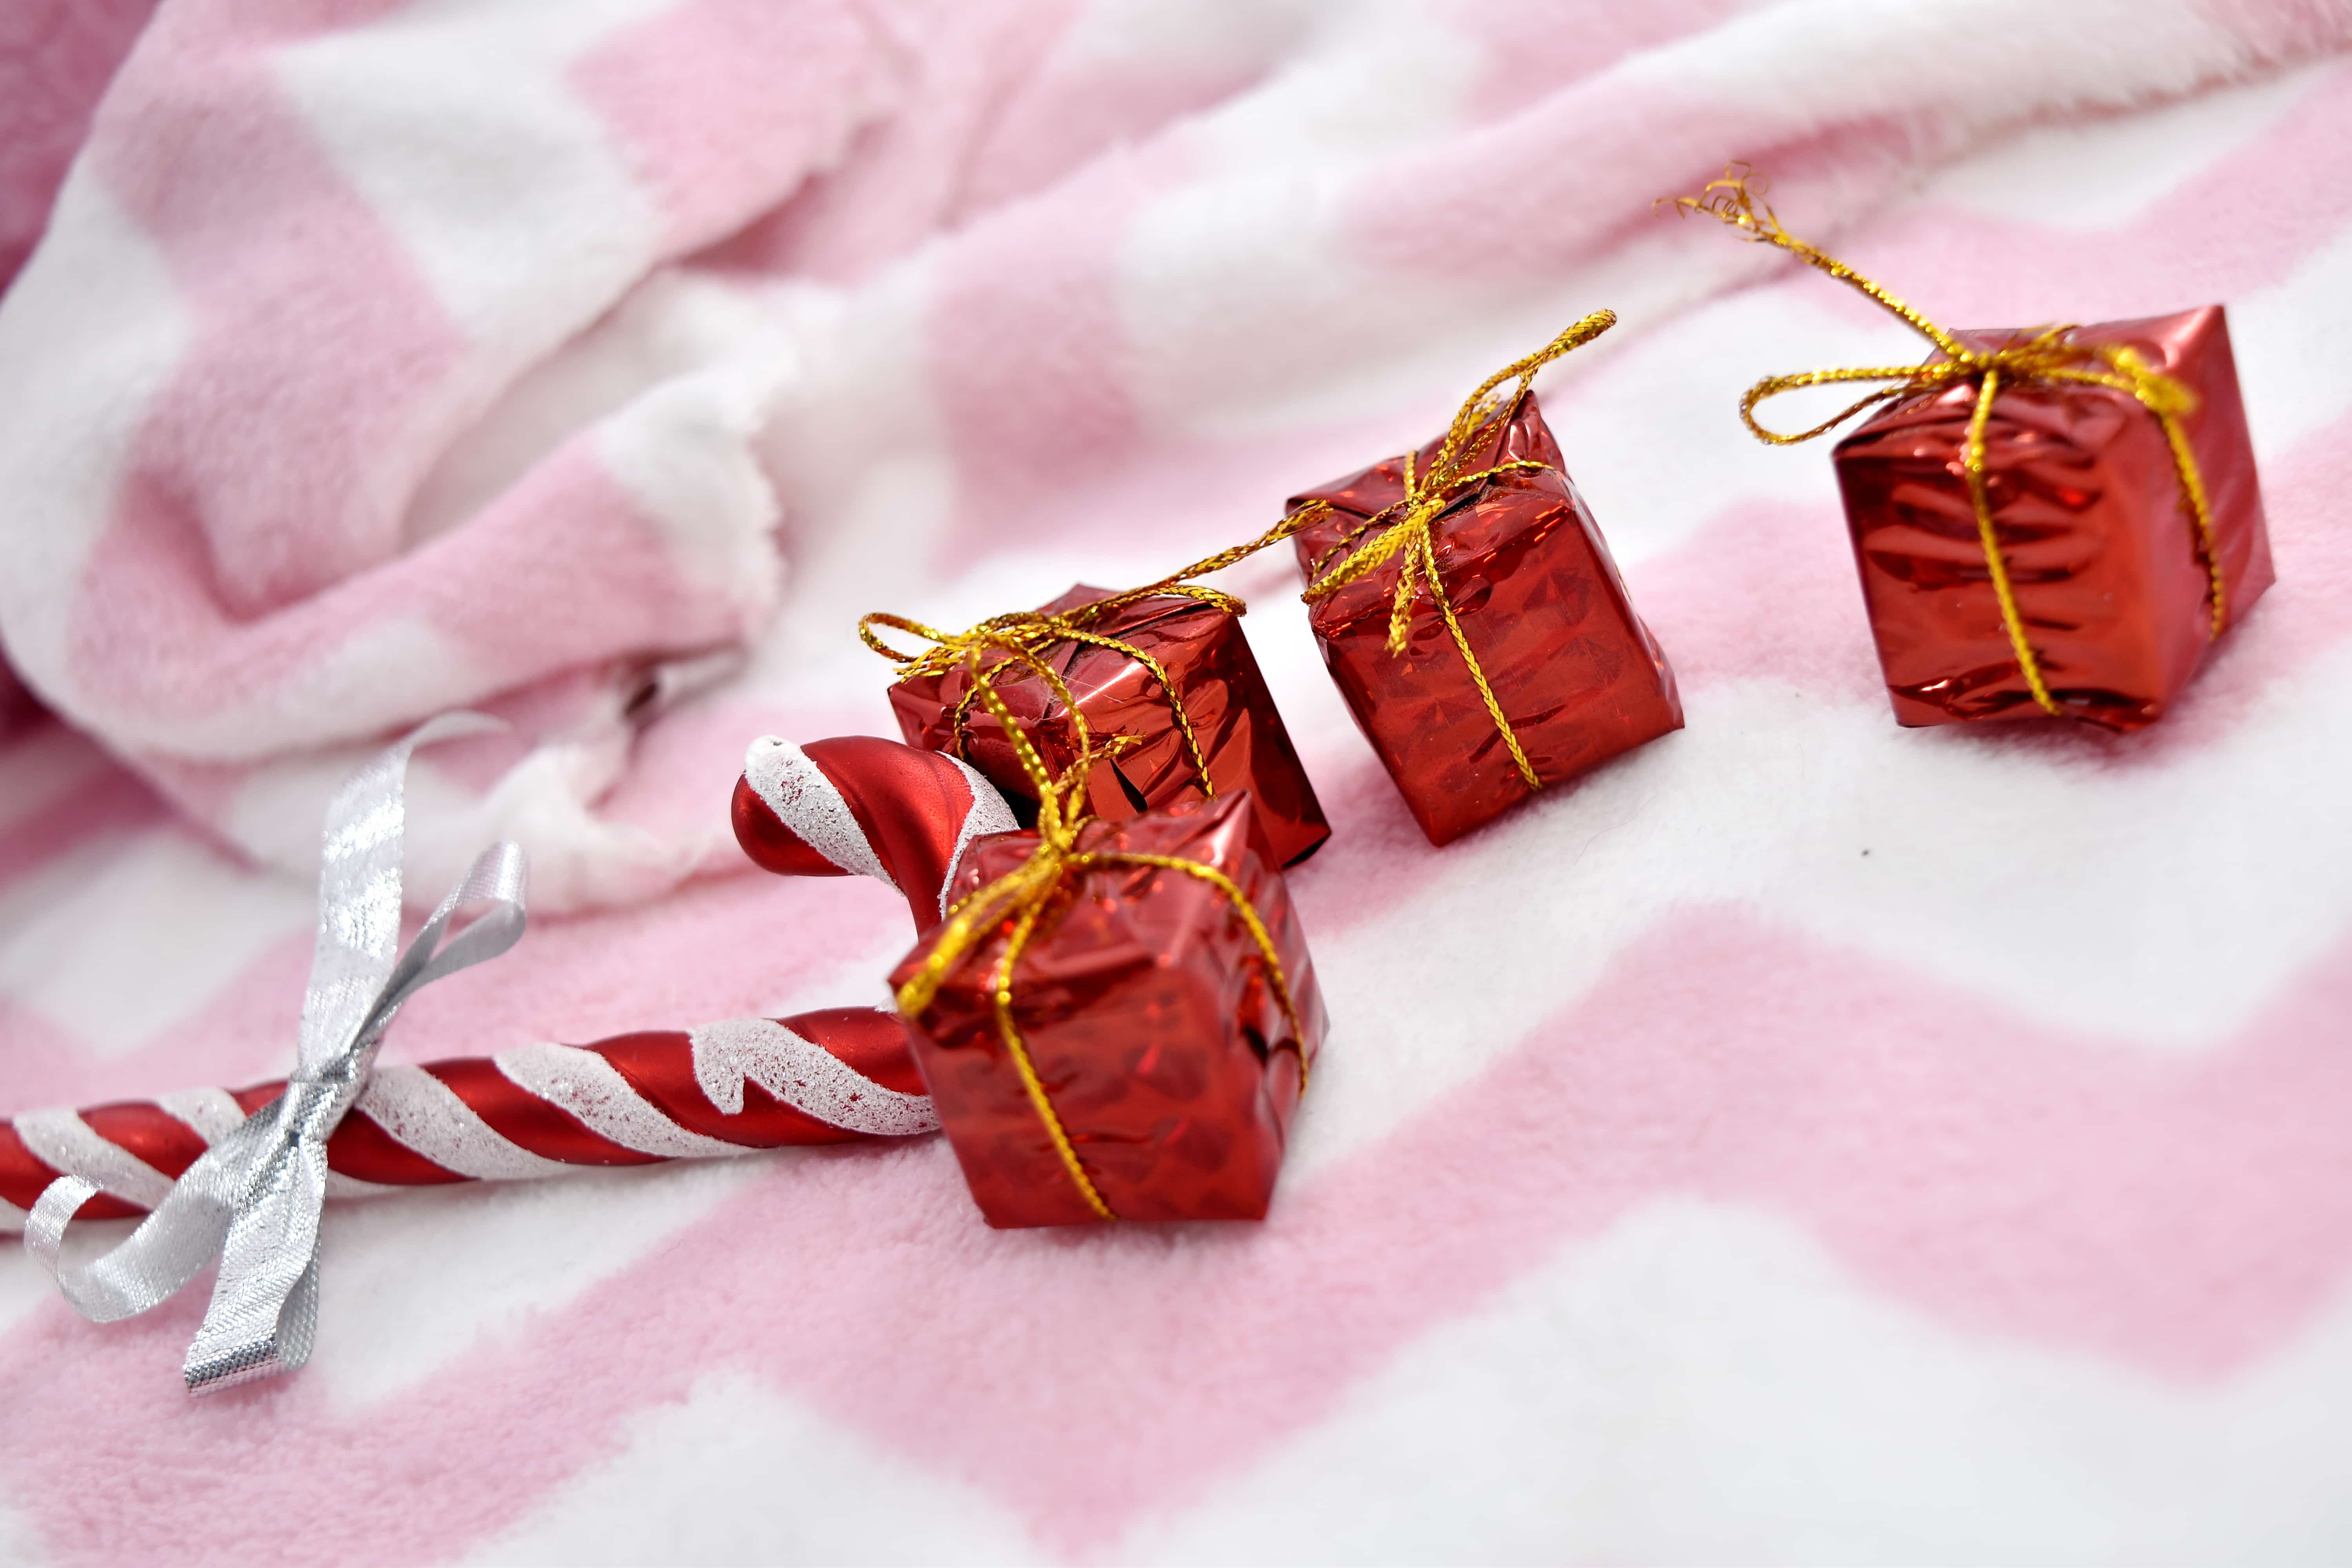 Image libre: couverture, cadeaux, nouvel an, Paquets, surprise, amour,  bonbons, cadeau, célébration, Shining